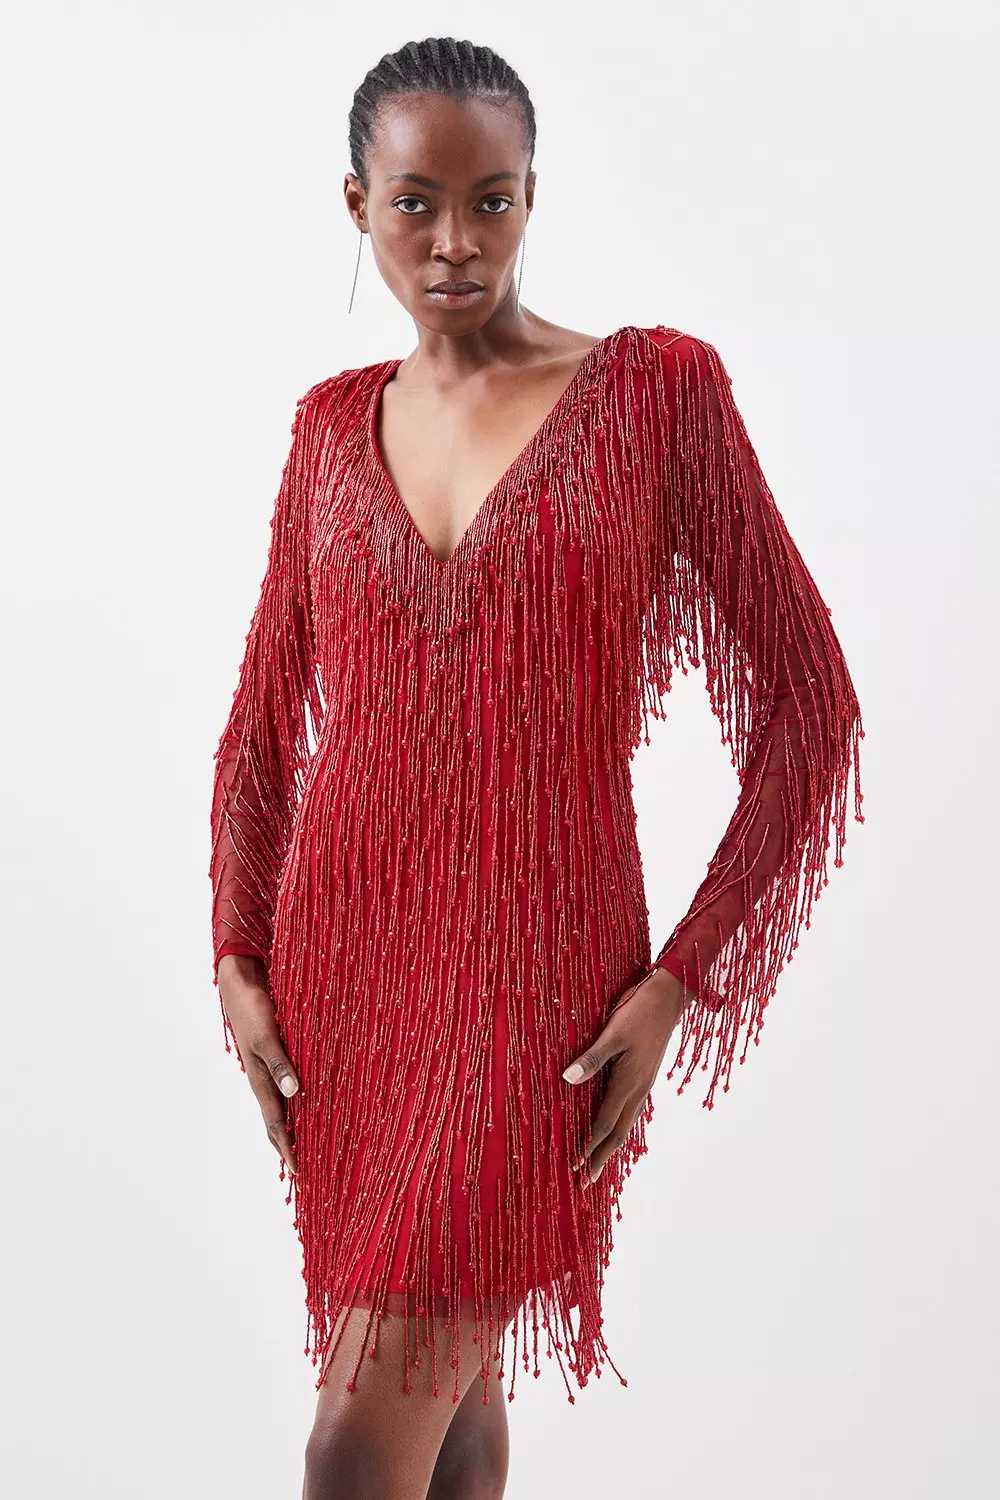 KAREN MILLEN Premium Beaded Embellished Woven Midaxi Dress in Red